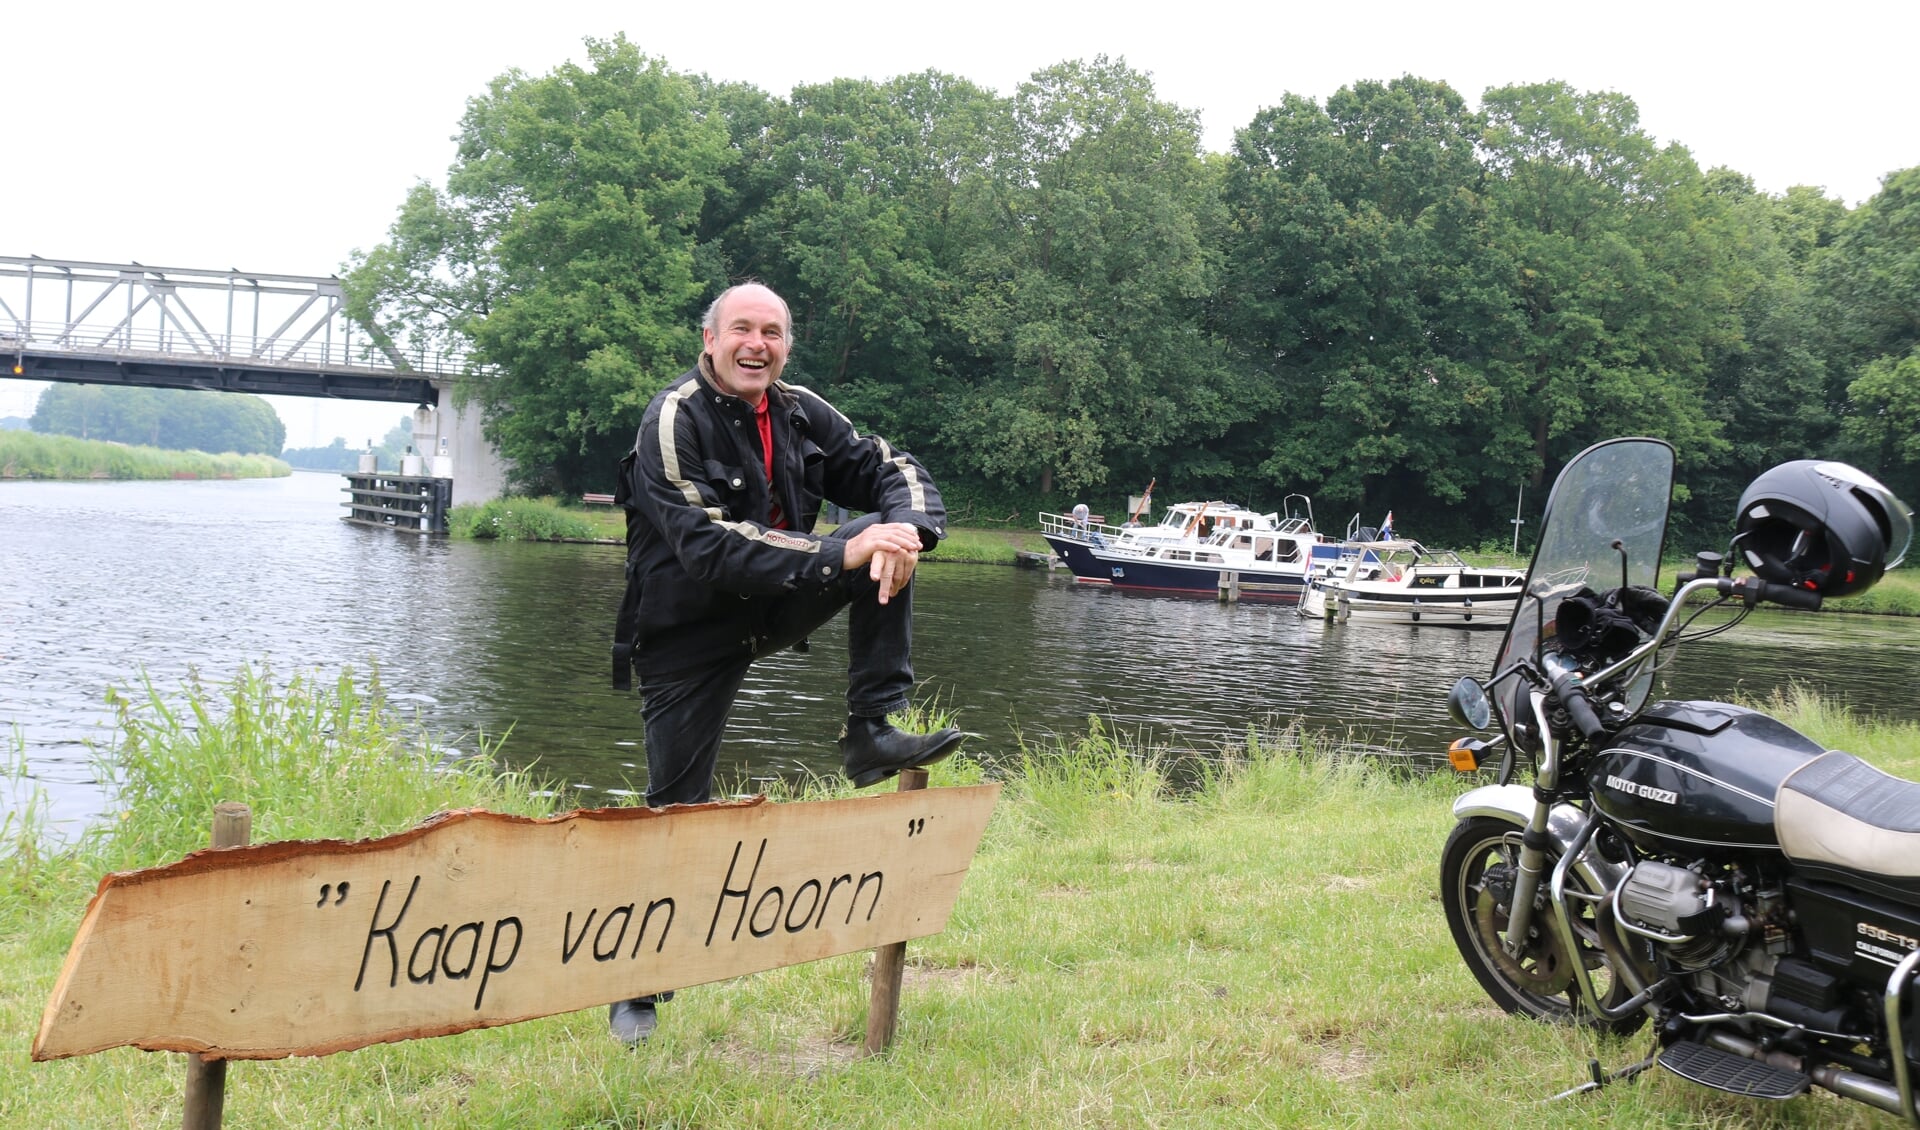 Sjef van Hoorn bij 'Kaap van Hoorn', met op de achtergrond de recreantenhaven. Foto: Arjen Dieperink